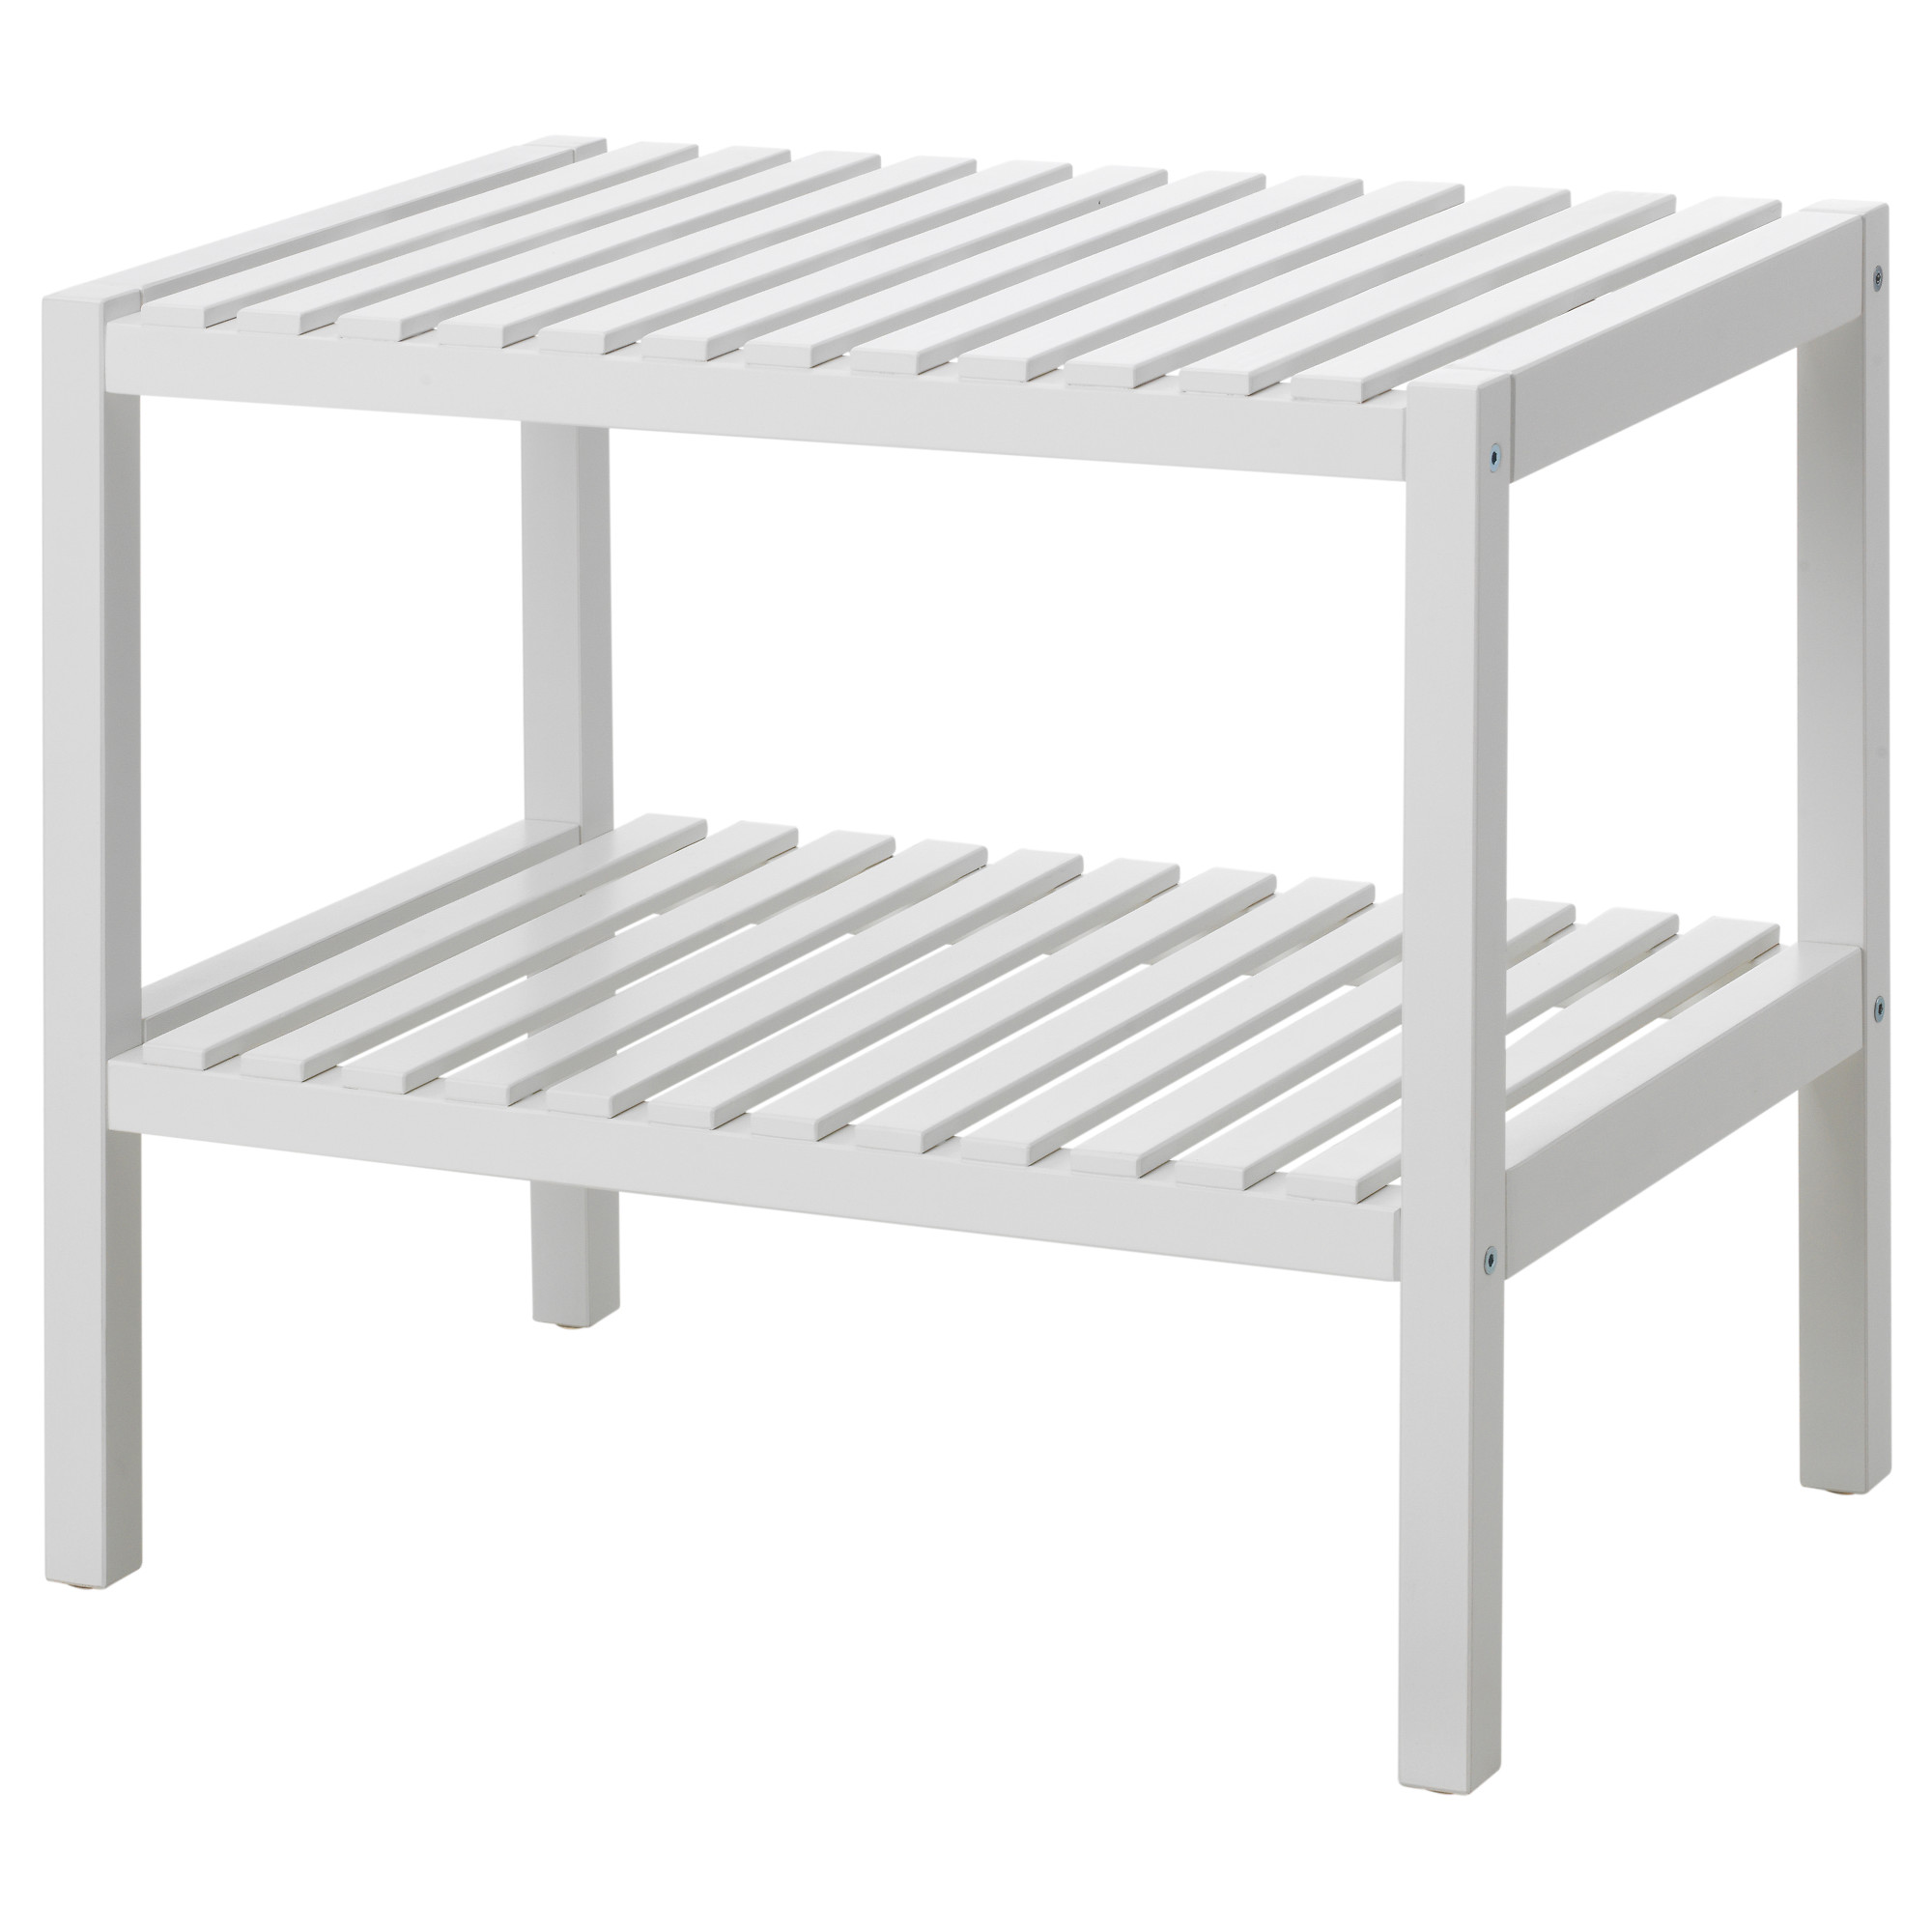 MUSKAN - 長凳, 白色, 58x38 厘米| IKEA 香港及澳門